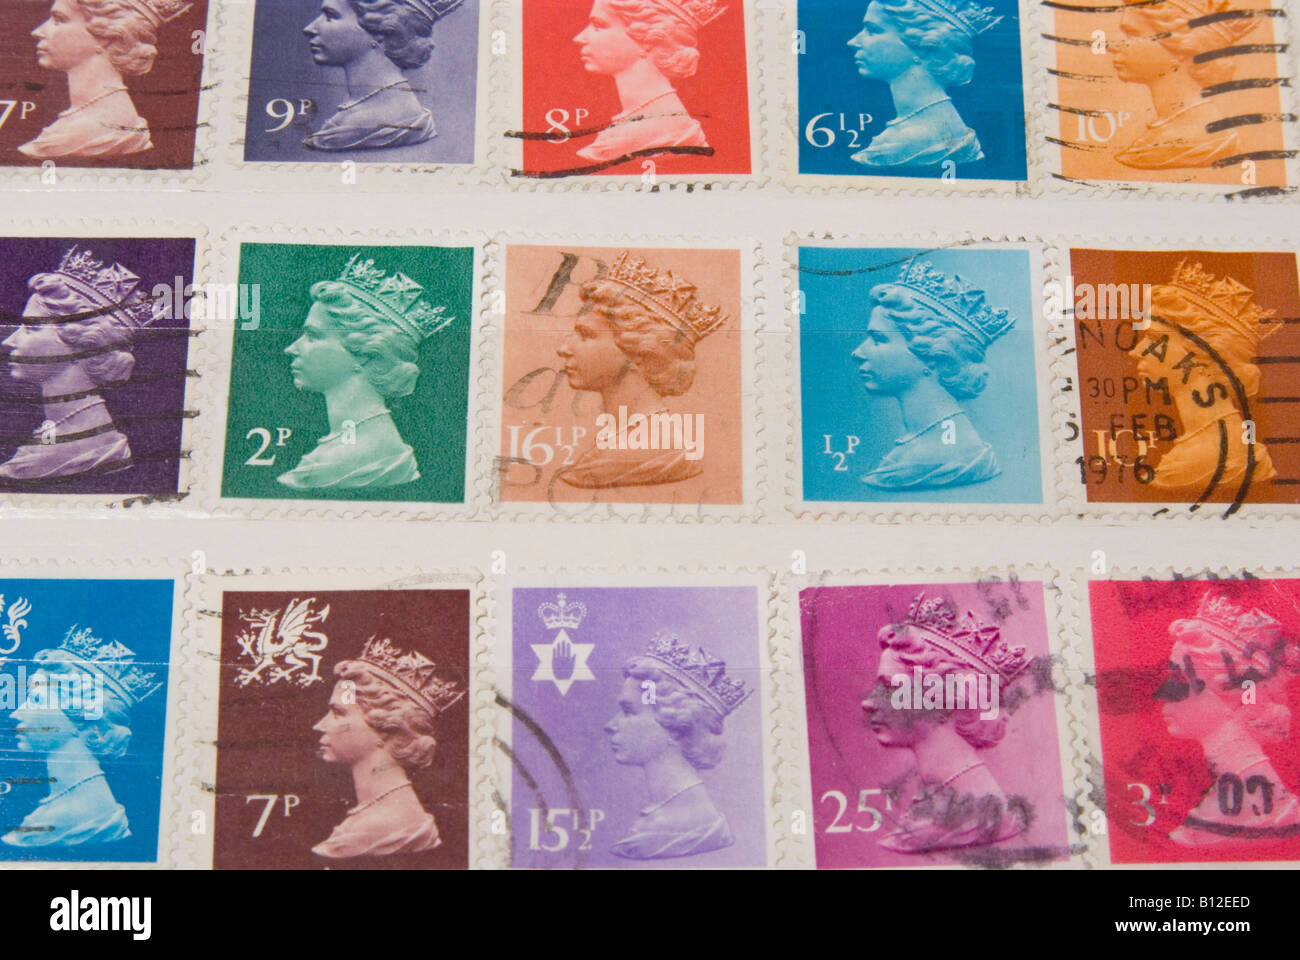 Antiguos sellos británica que representa a la Reina Elizabeth Foto de stock